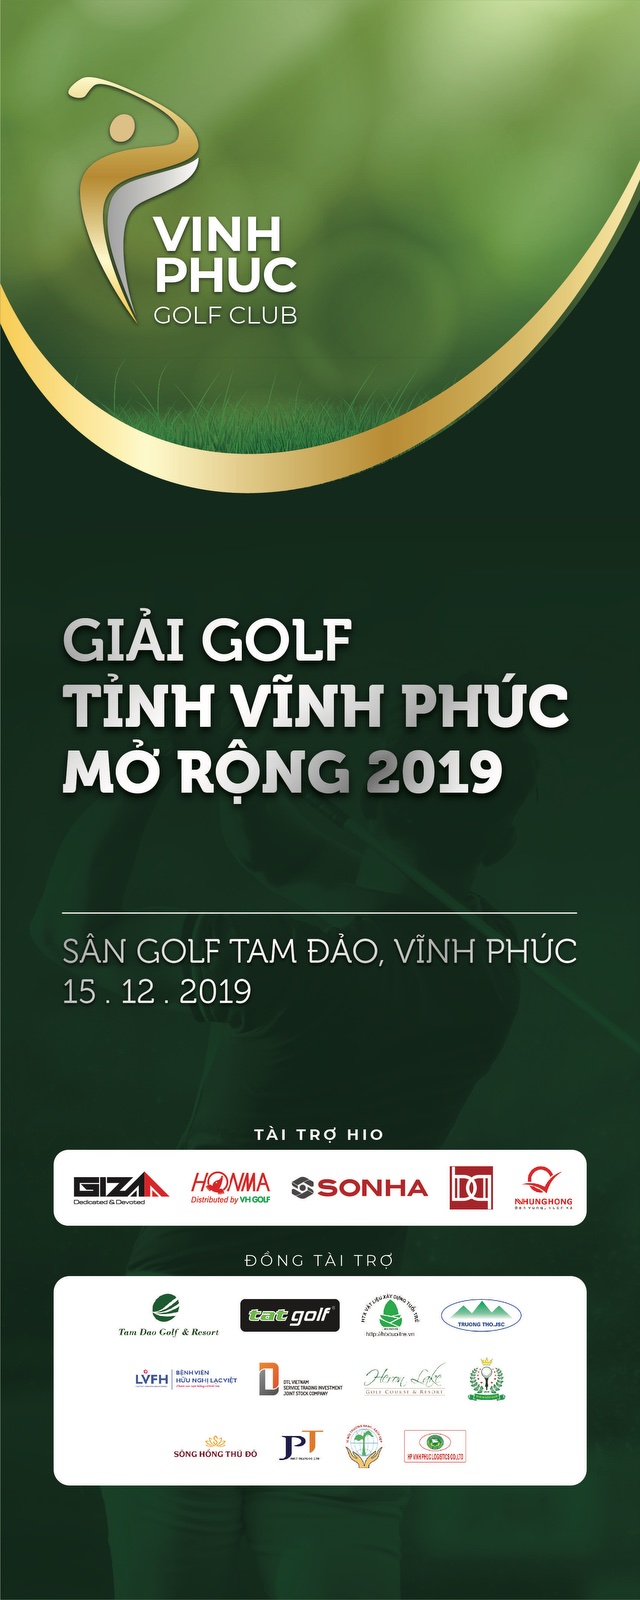 Giải golf Tỉnh Vĩnh Phúc mở rộng 2019 chuẩn bị khởi tranh